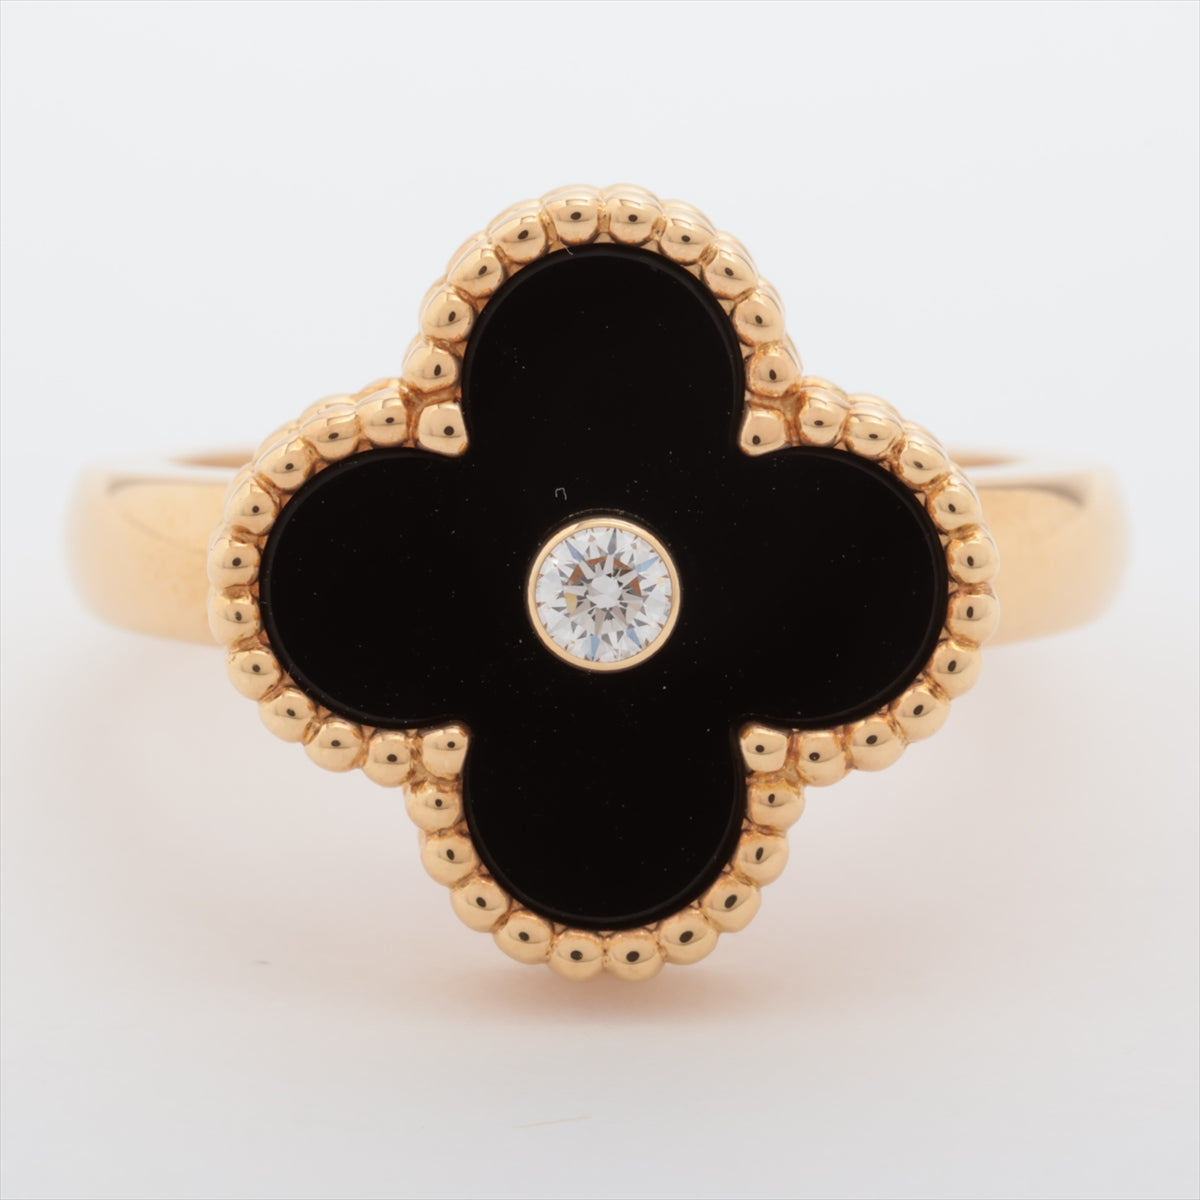 Van Cleef & Arpels Vintage Alhambra Onyx Diamond Ring 750 (YG) 7.0g 54 VCARA41054